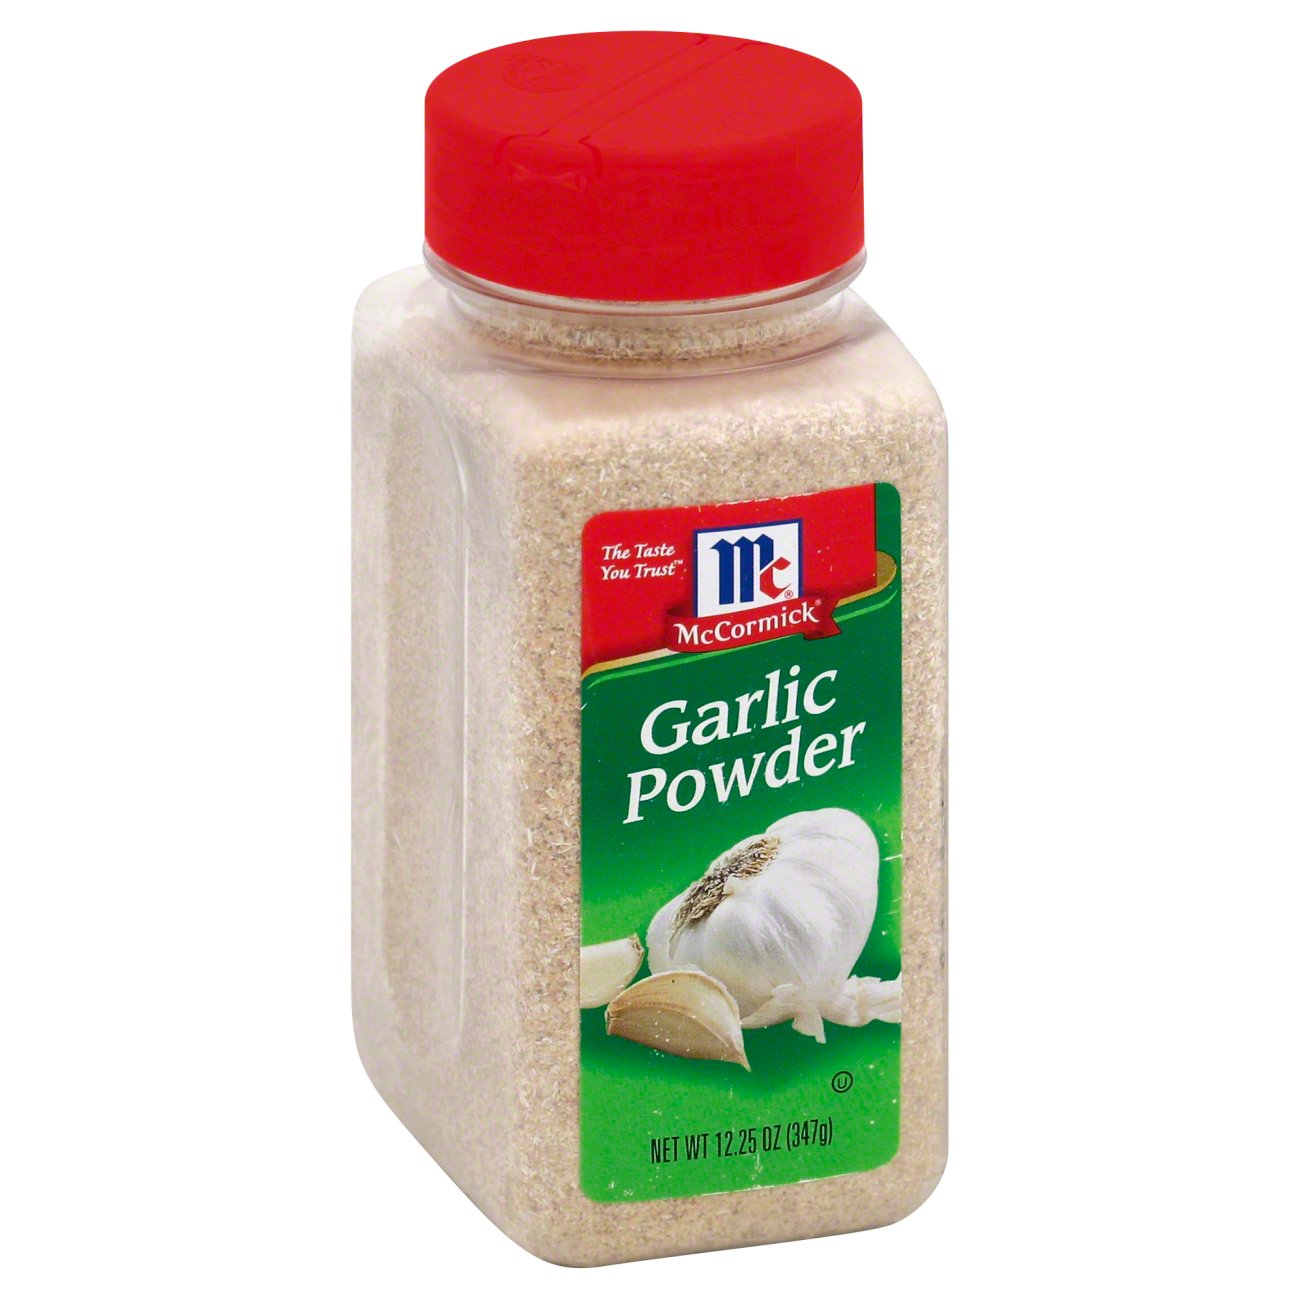 Mccormick Garlic Powder Shop Herbs And Spices At H E B